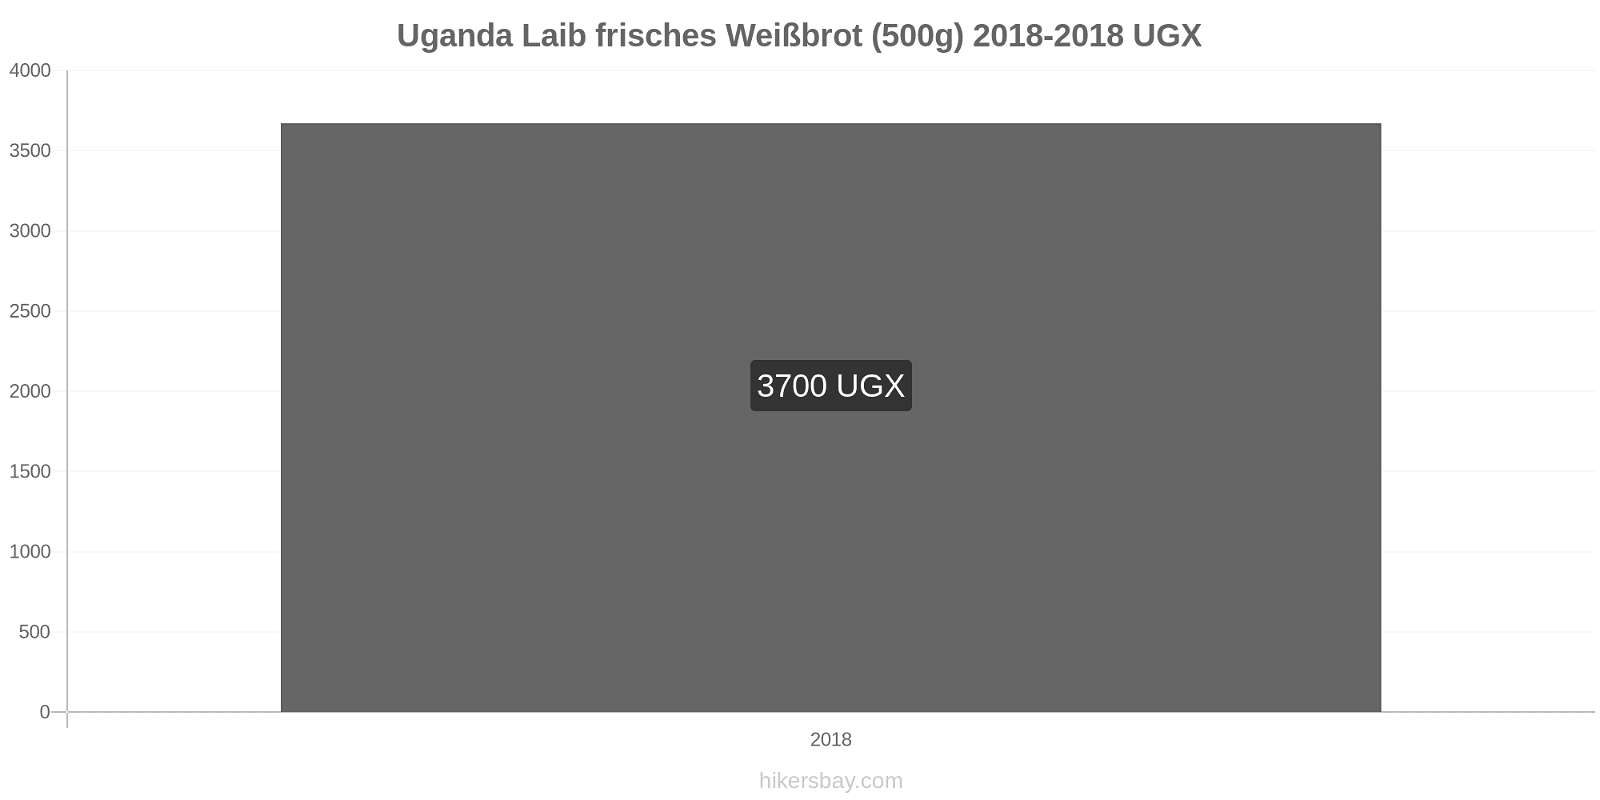 Uganda Preisänderungen Ein Laib frisches Weißbrot (500g) hikersbay.com